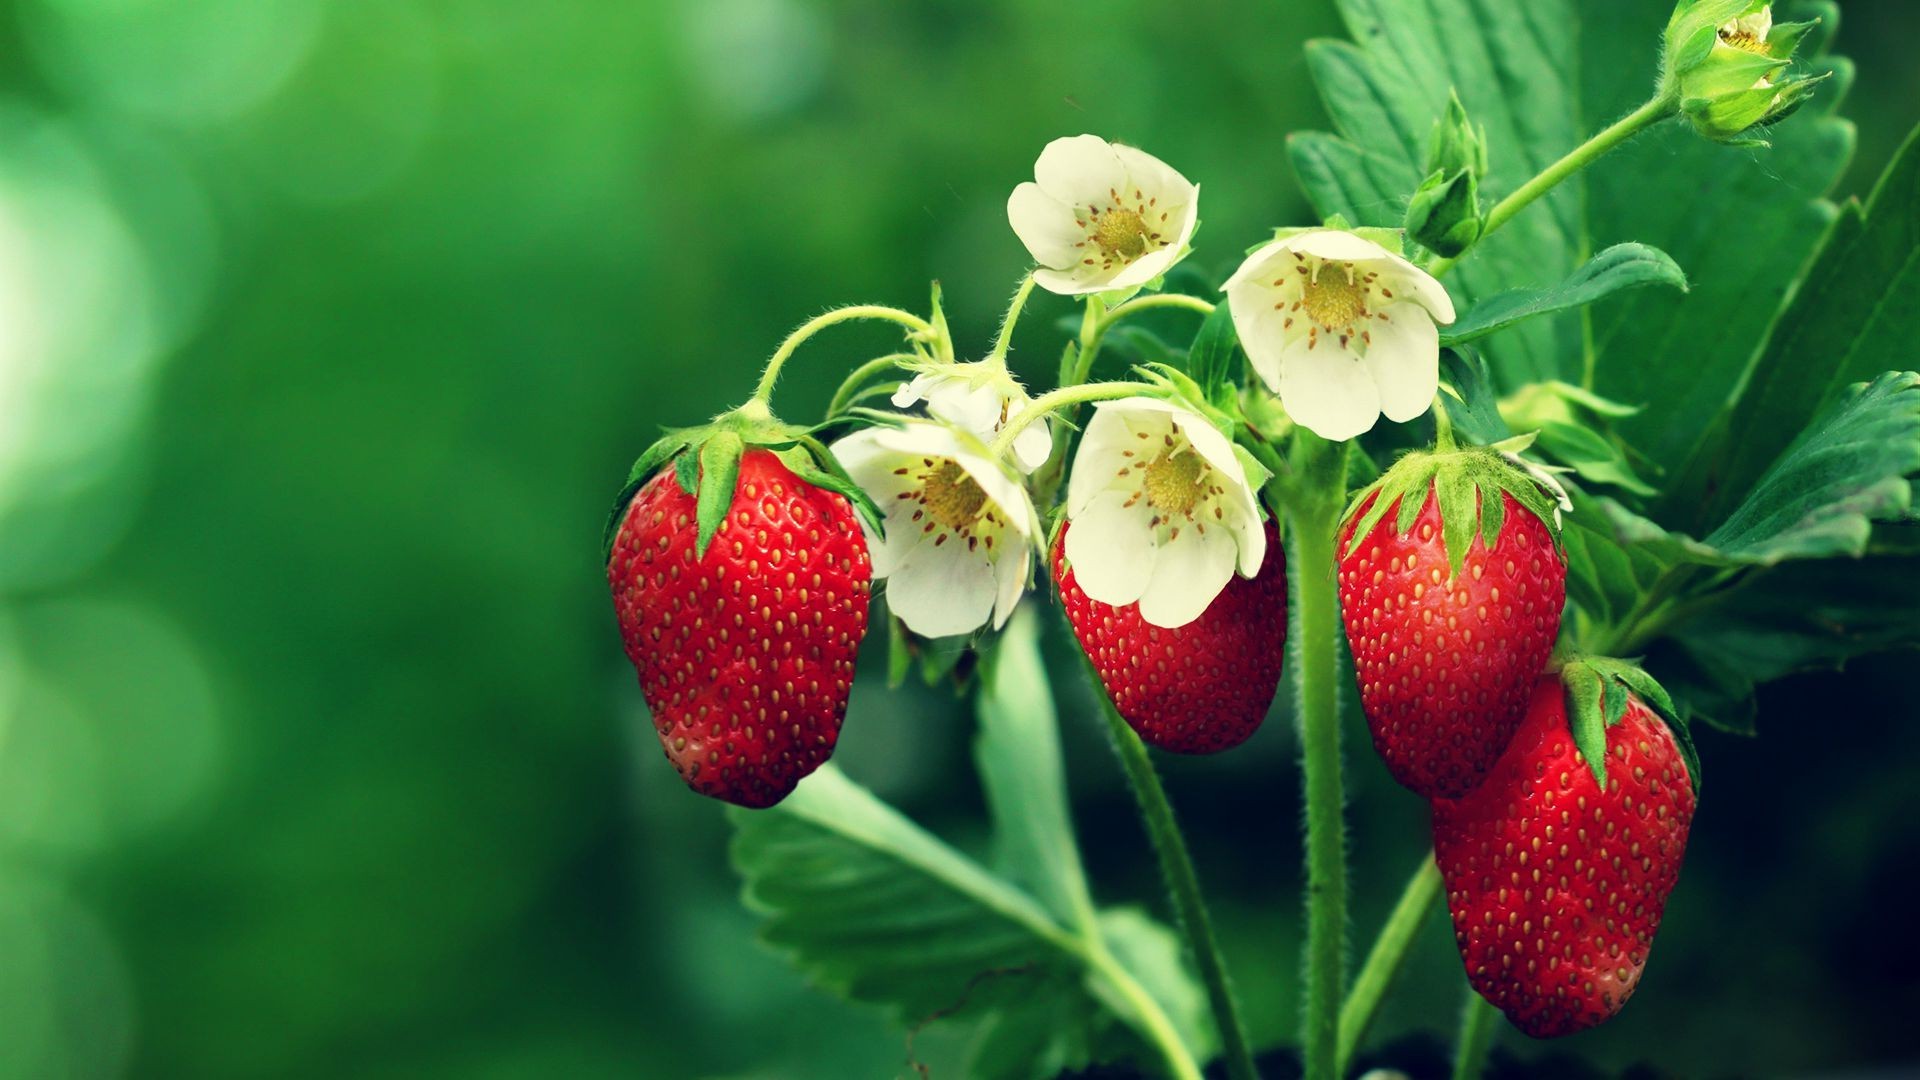 strawberries, Flowers, Leaves Wallpaper